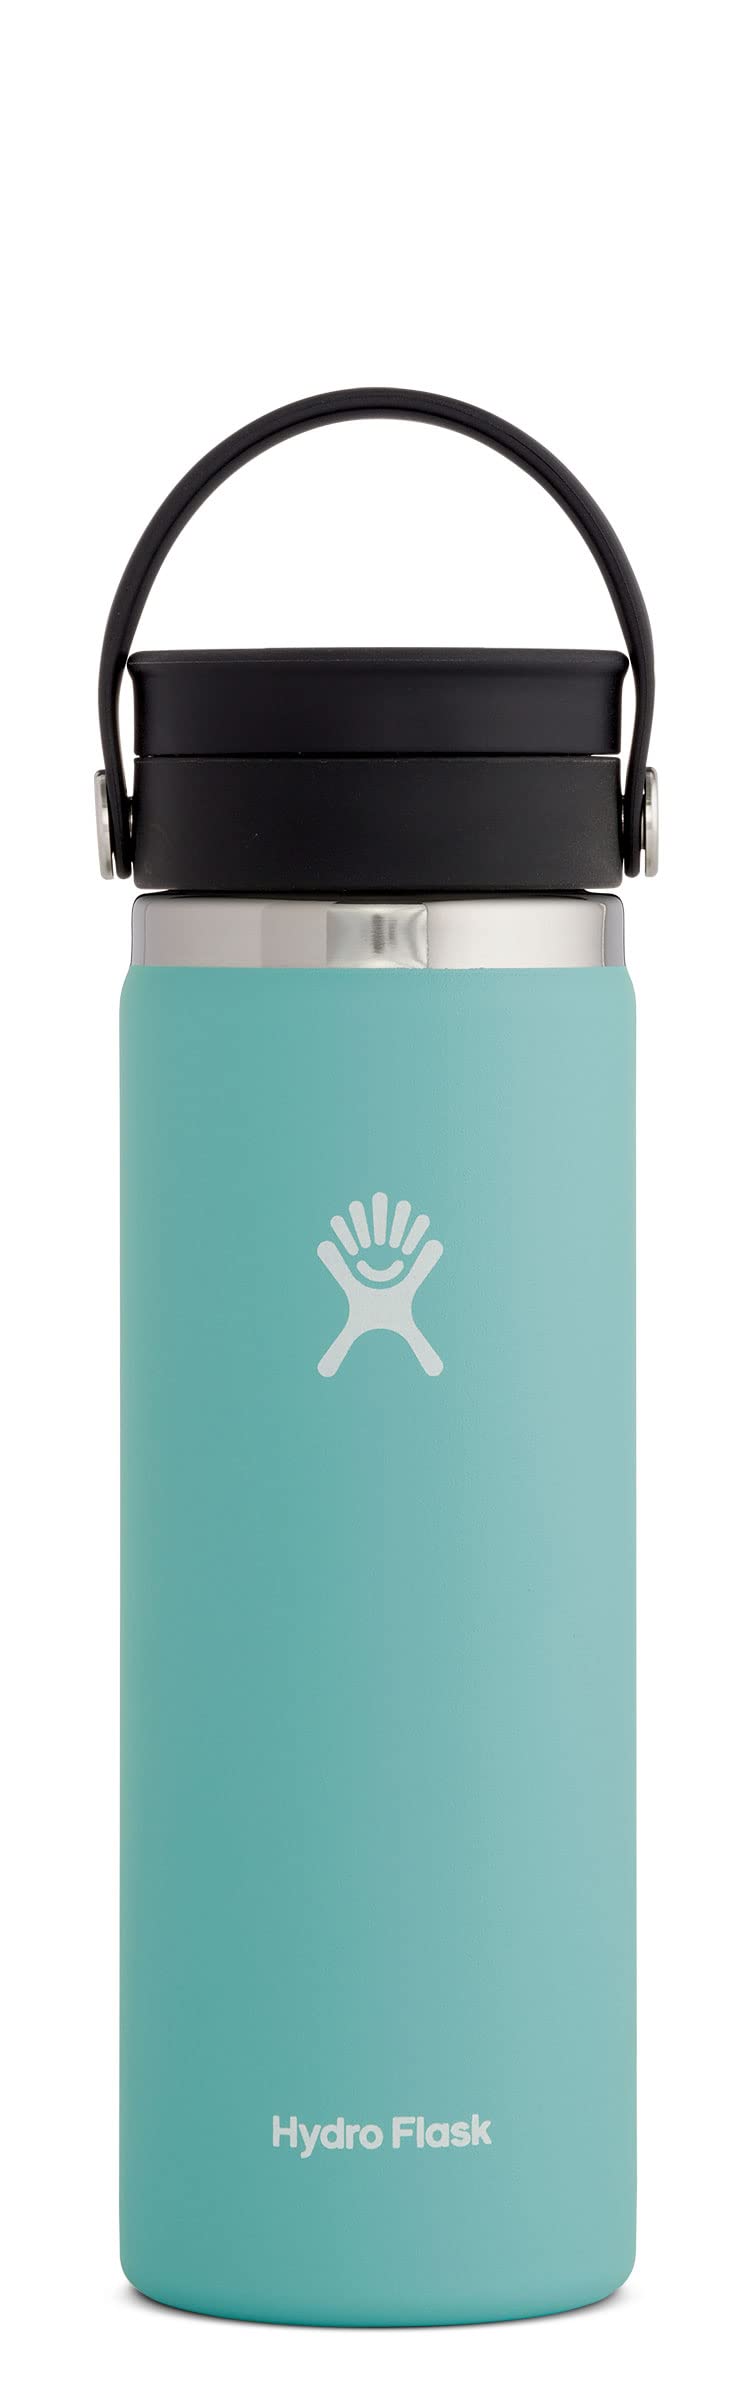 Hydro Flask زجاجة ذات فم واسع سعة 20 أونصة مع غطاء ألباين فليكس سيب